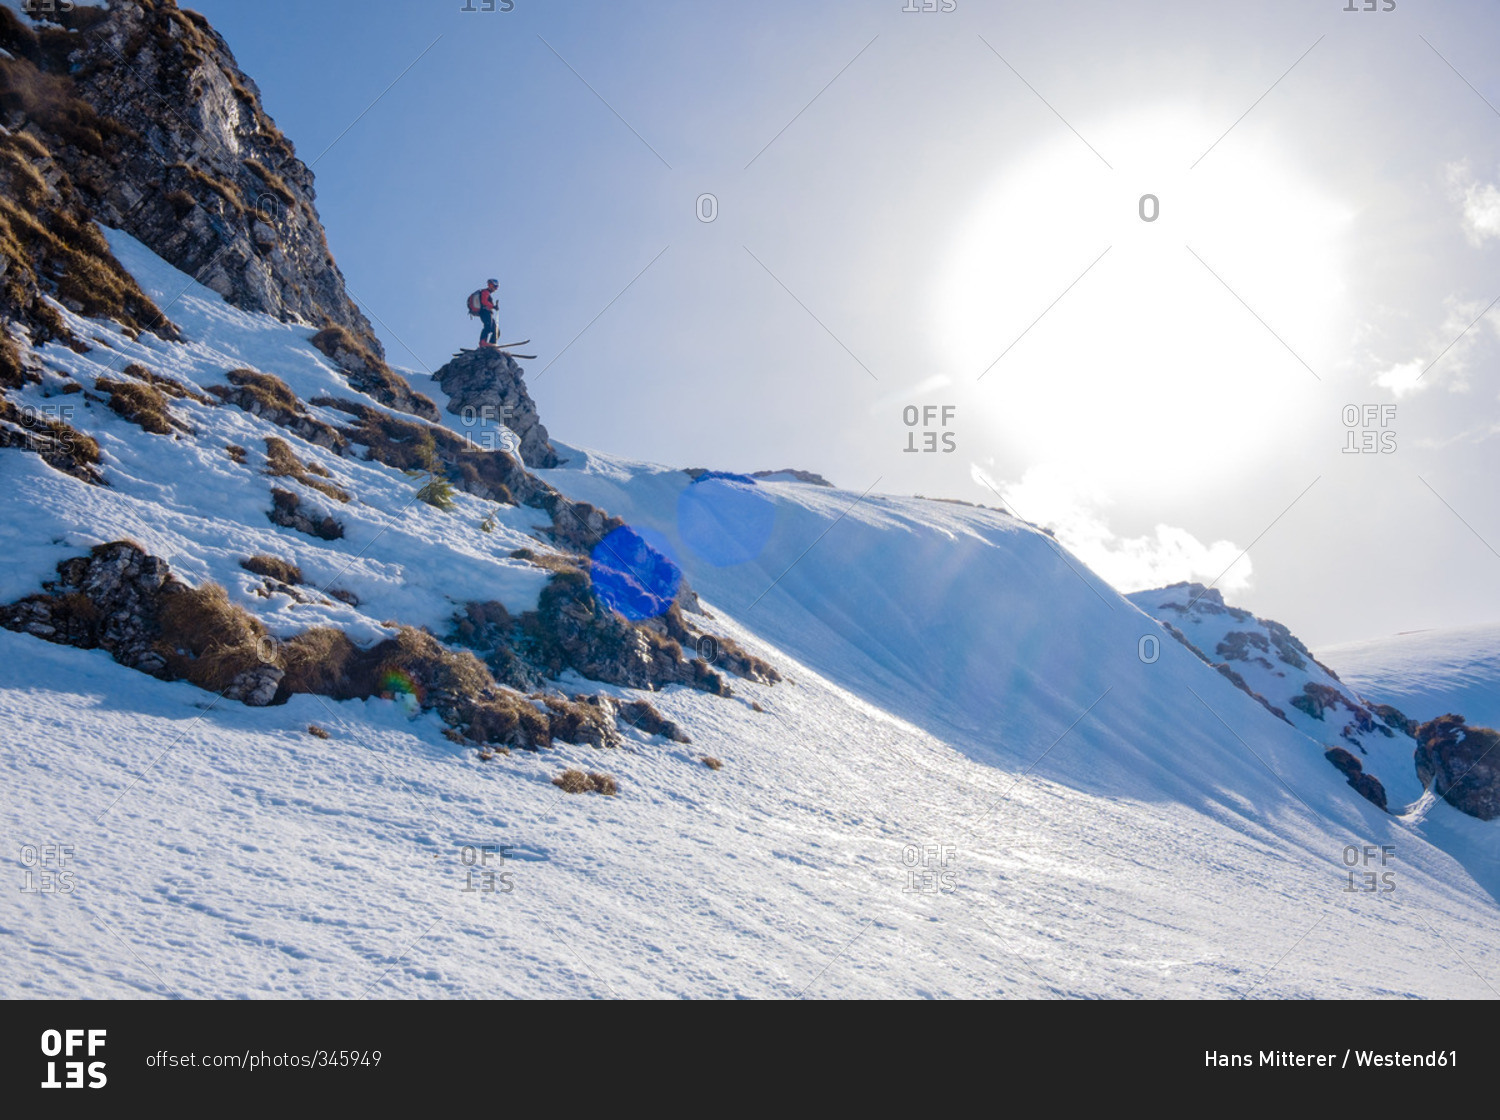 Romania, Southern Carpathians, skier in winter landscape